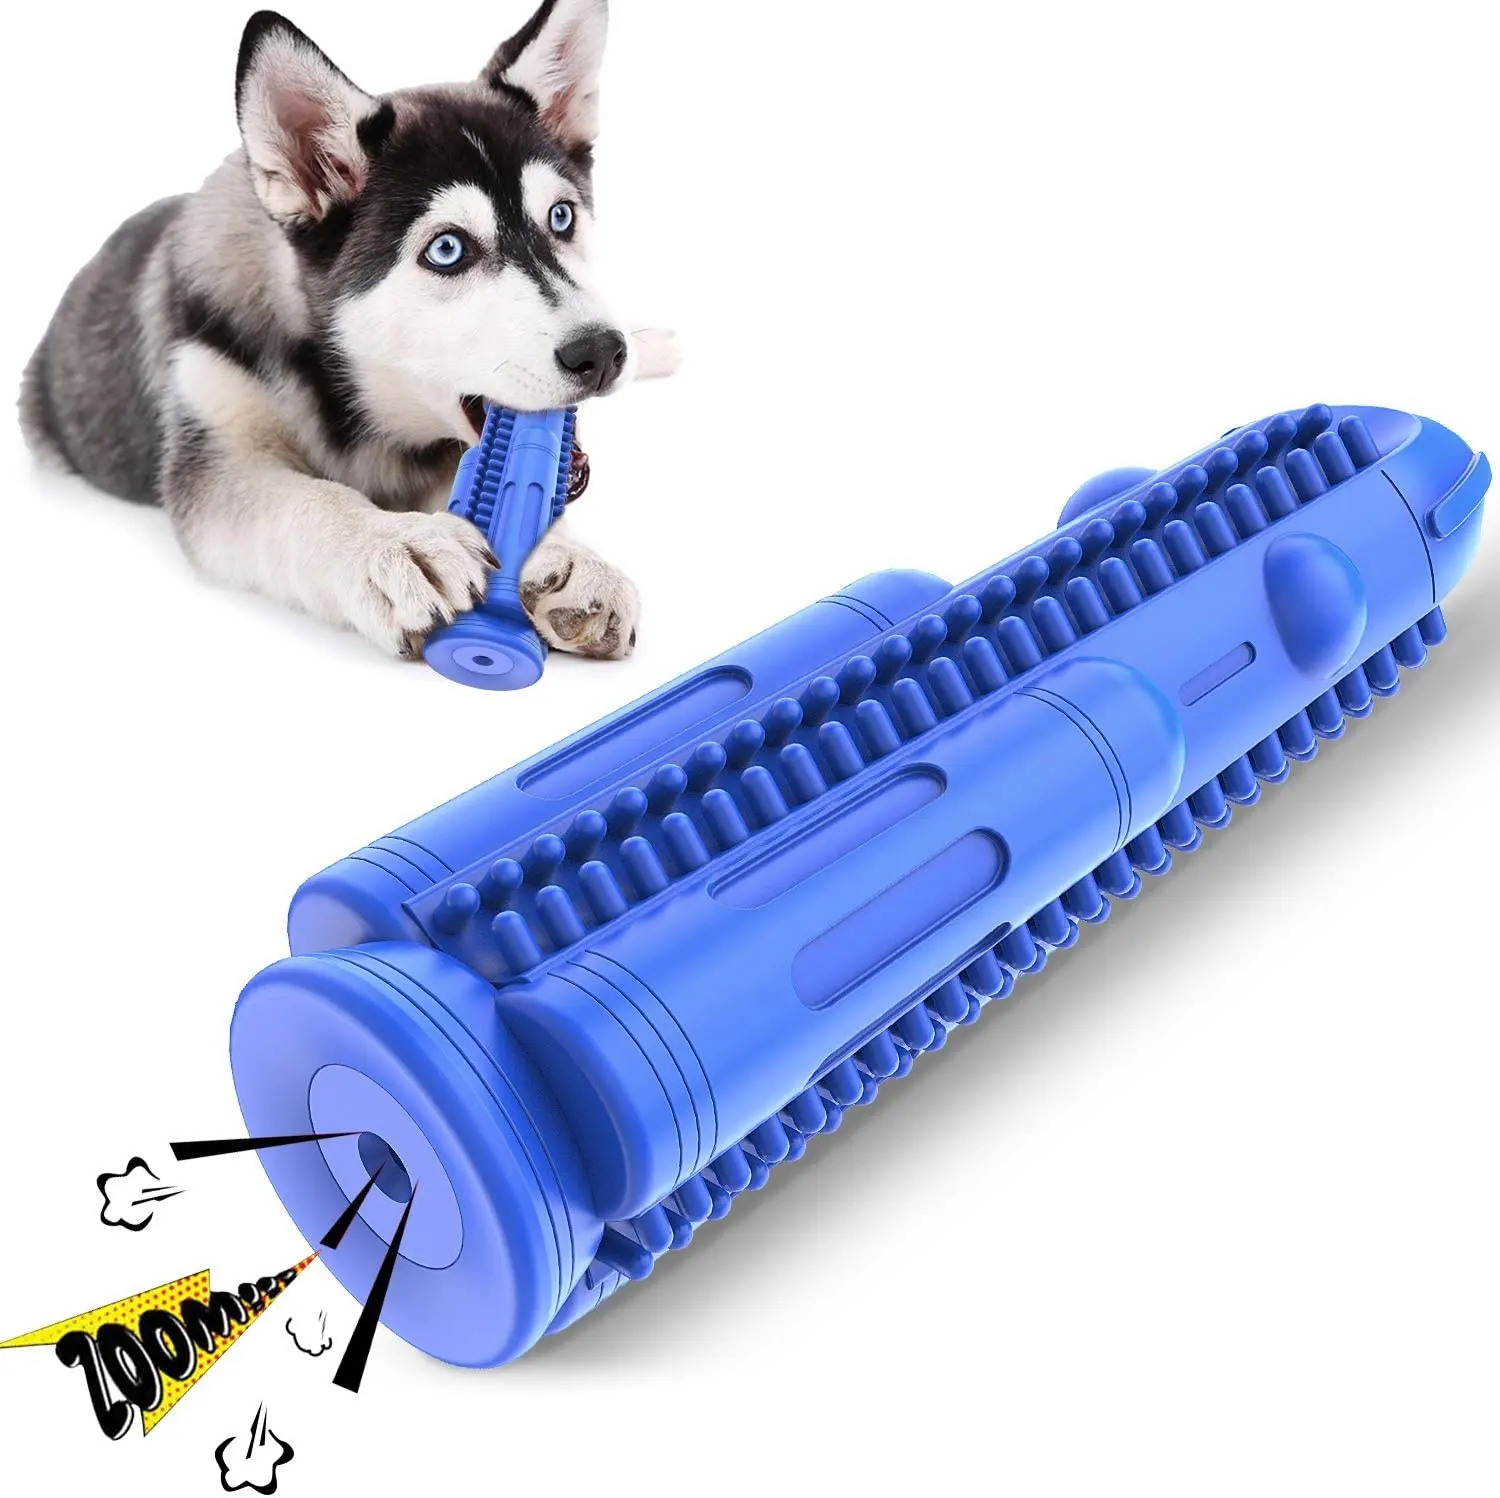 A-mazon sıcak satış çevre dostu yıkılmaz kauçuk roket köpek gıcırtılı çiğnemek oyuncaklar için agresif Chewers